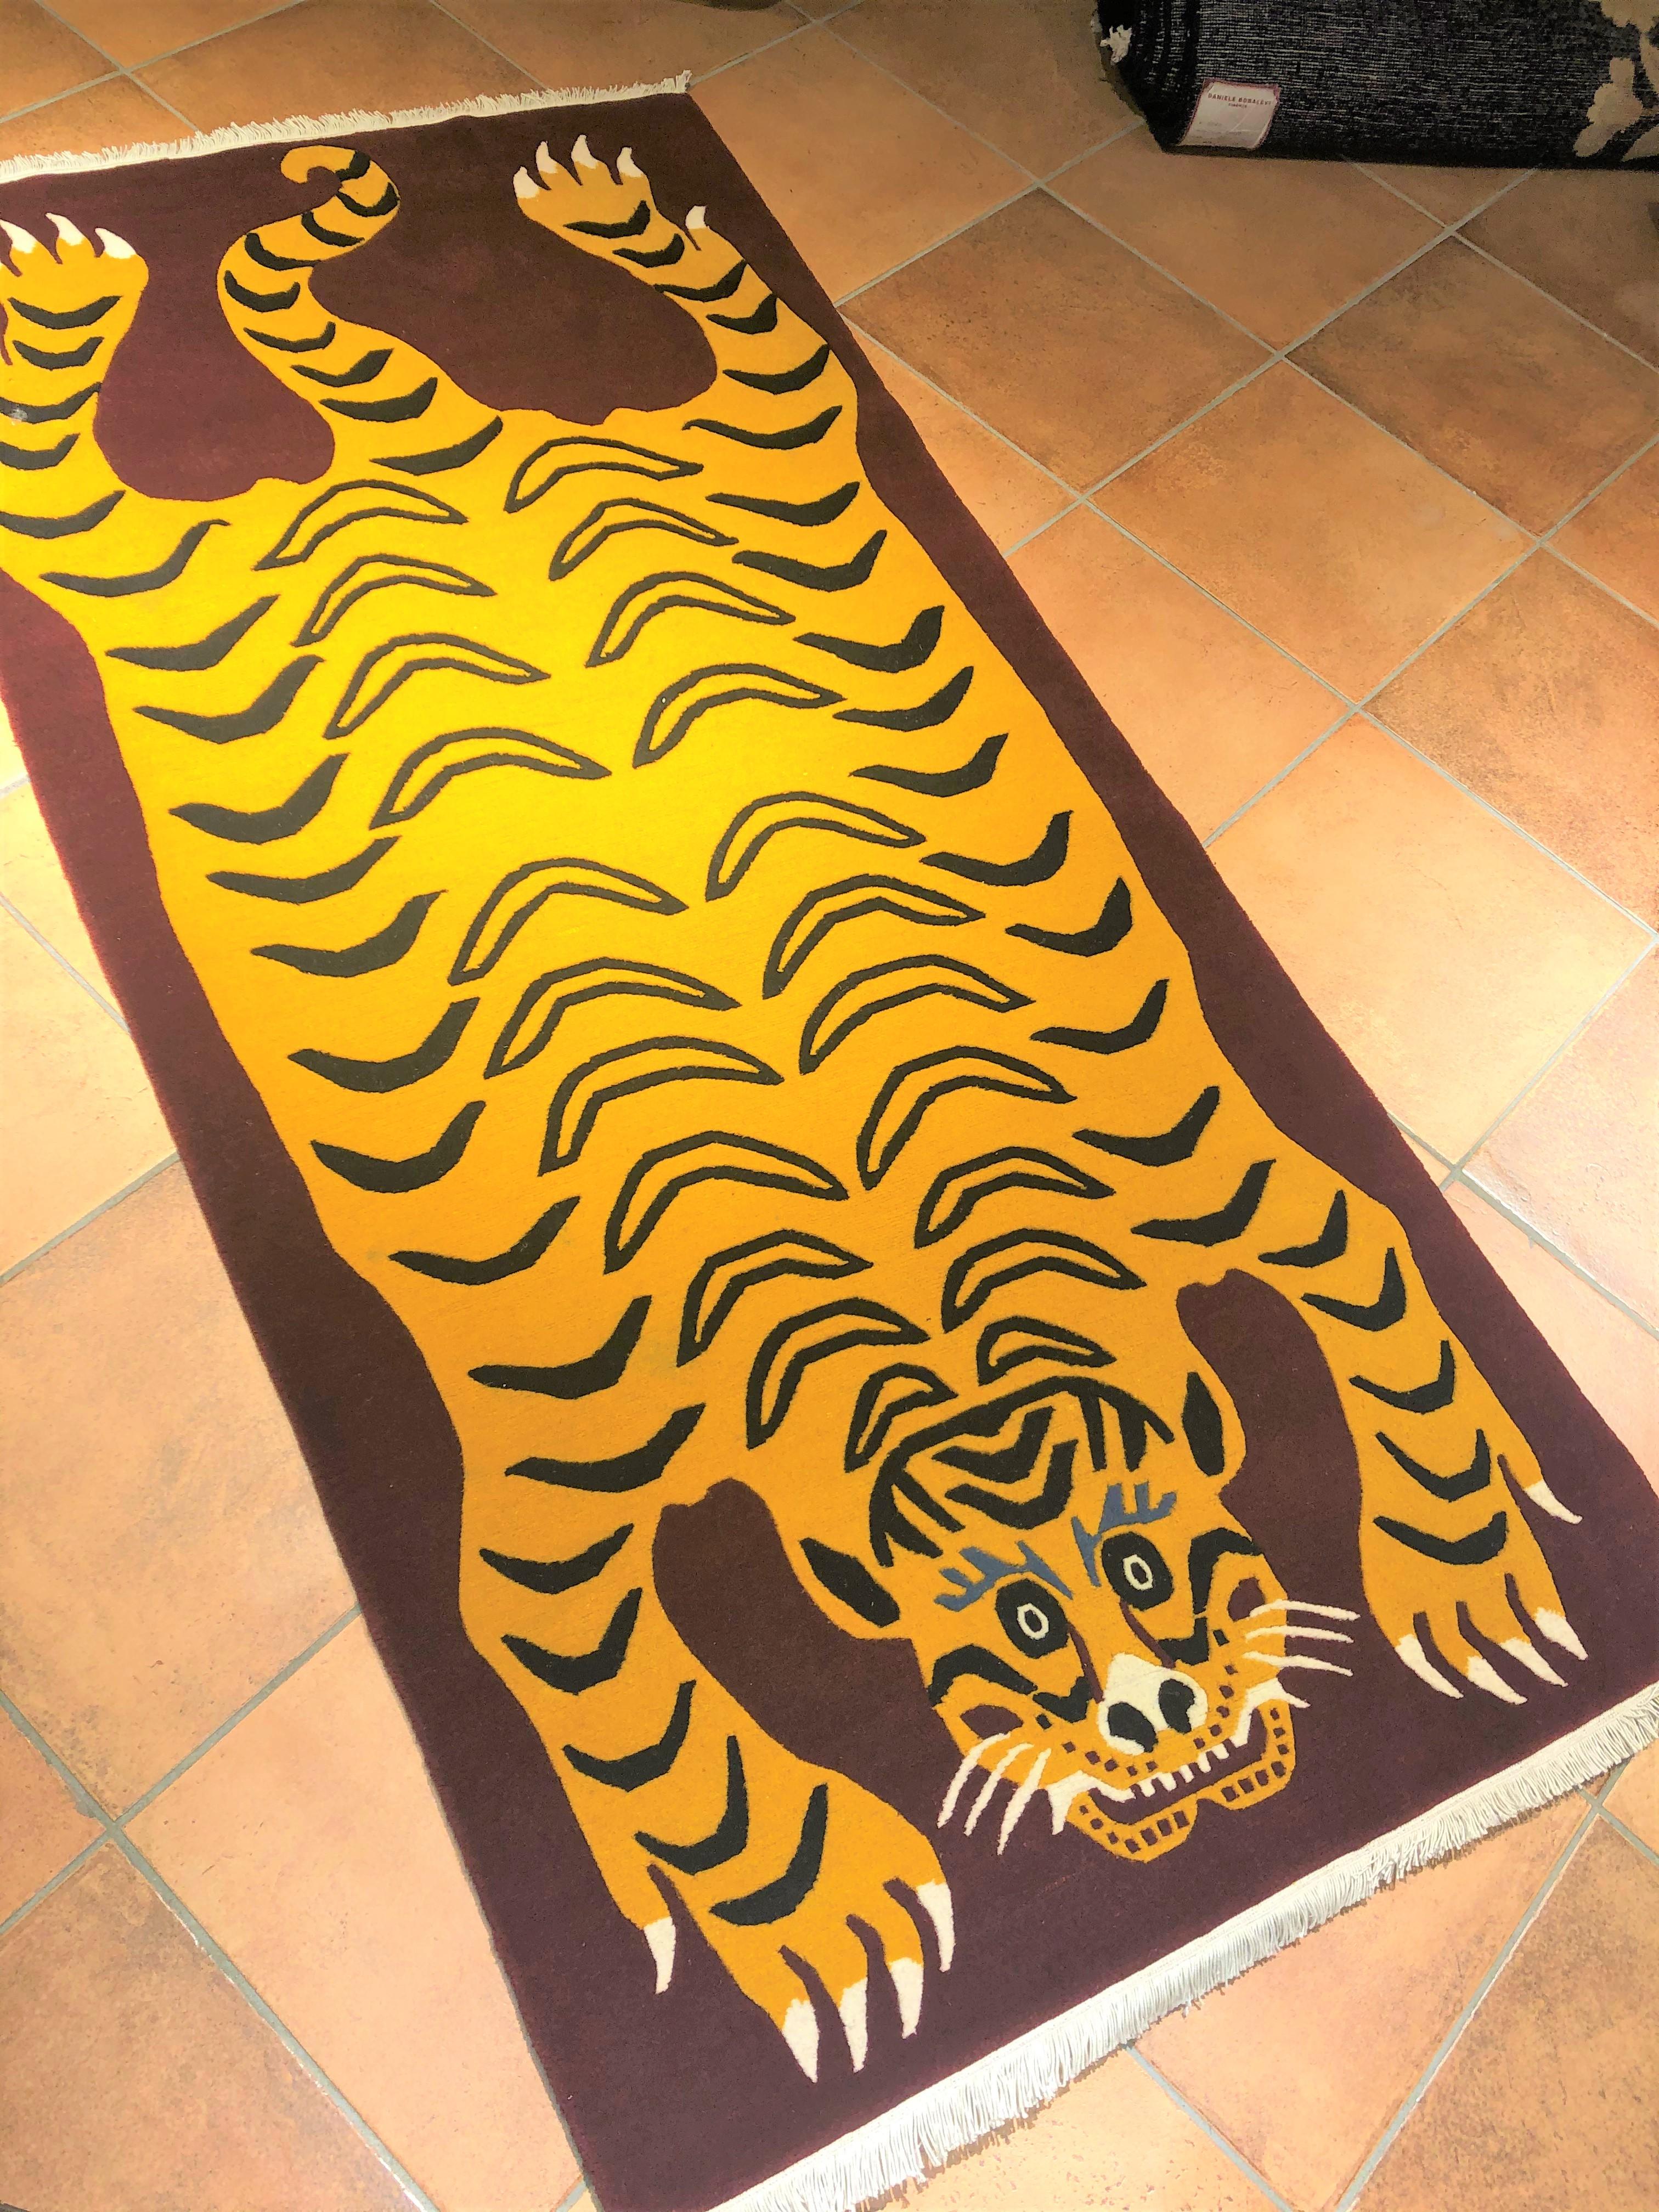 Teppich aus nepalesischer Produktion, geknüpft aus handgesponnener Wolle mit tibetischem Knoten. Der Hintergrund ist purpurrot und der Rücken des dargestellten Tigers ist reich mit dem traditionellen gelben Fell dieser Raubkatzen verziert. Das